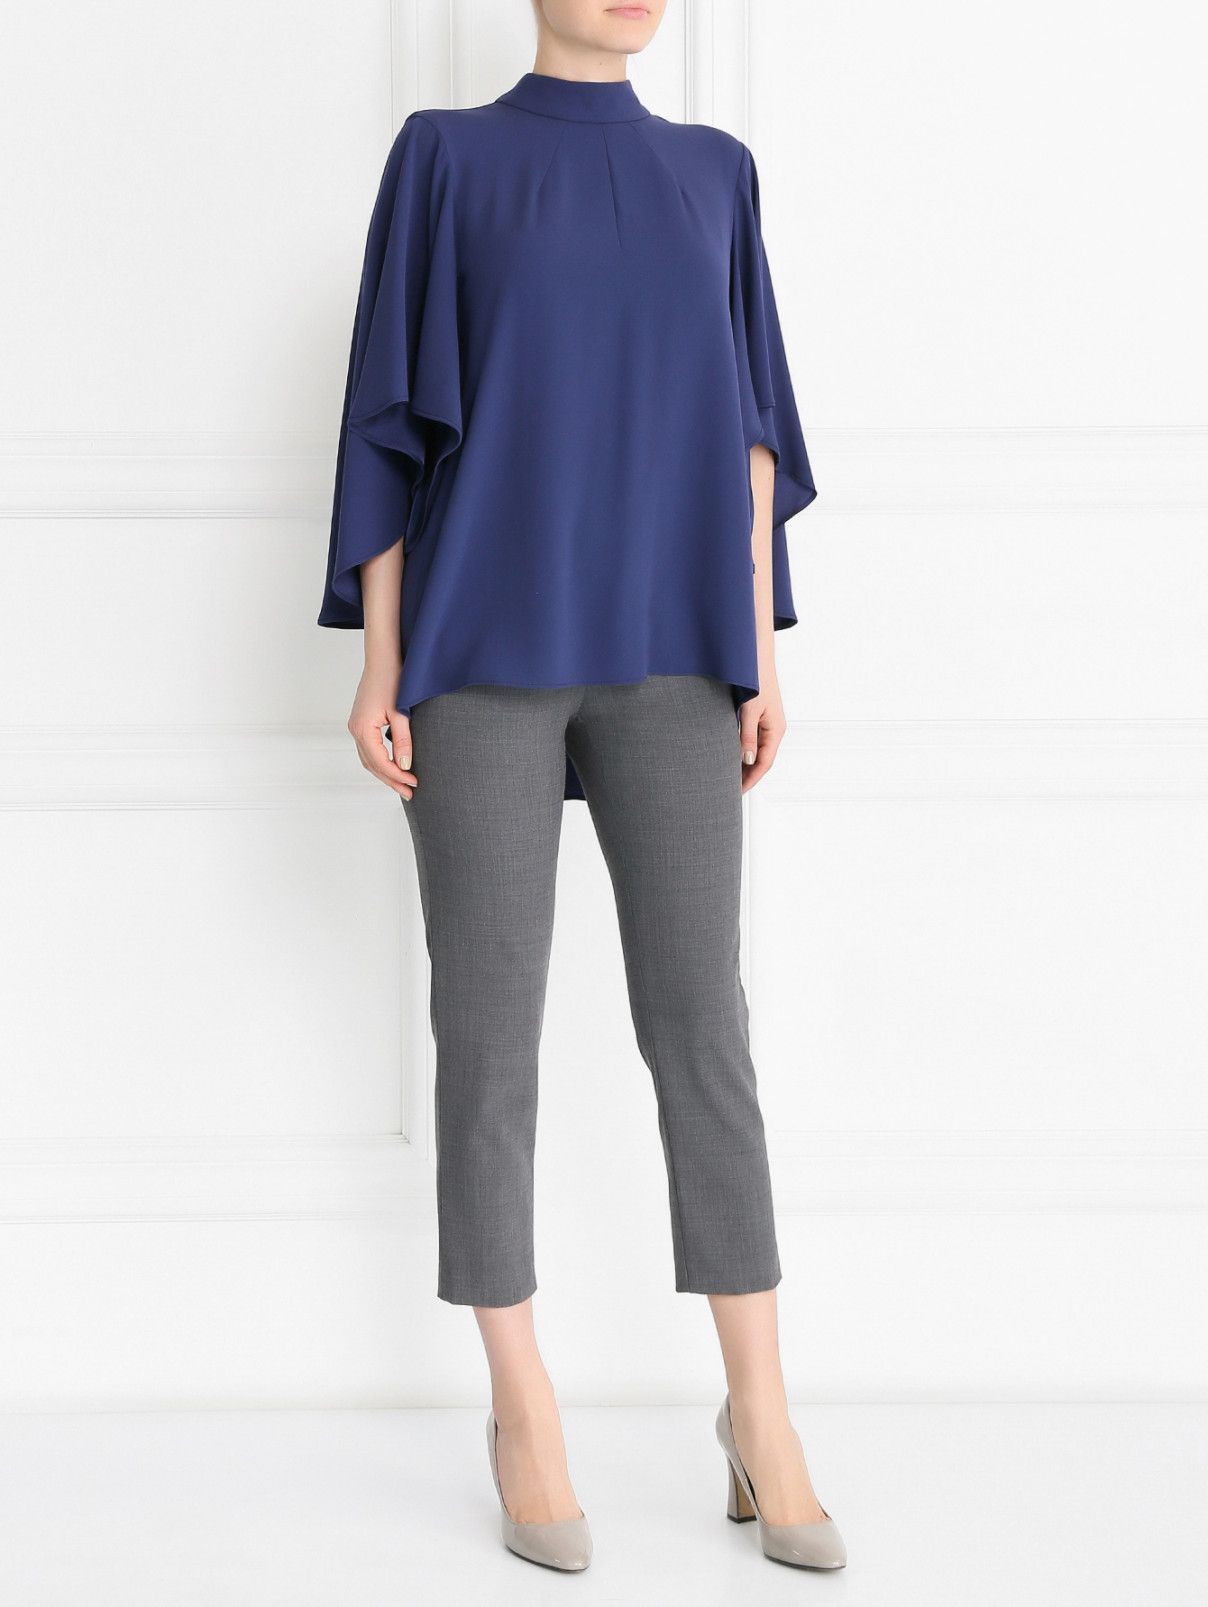 Блуза свободного кроя с широкими рукавами Tara Jarmon  –  Модель Общий вид  – Цвет:  Синий